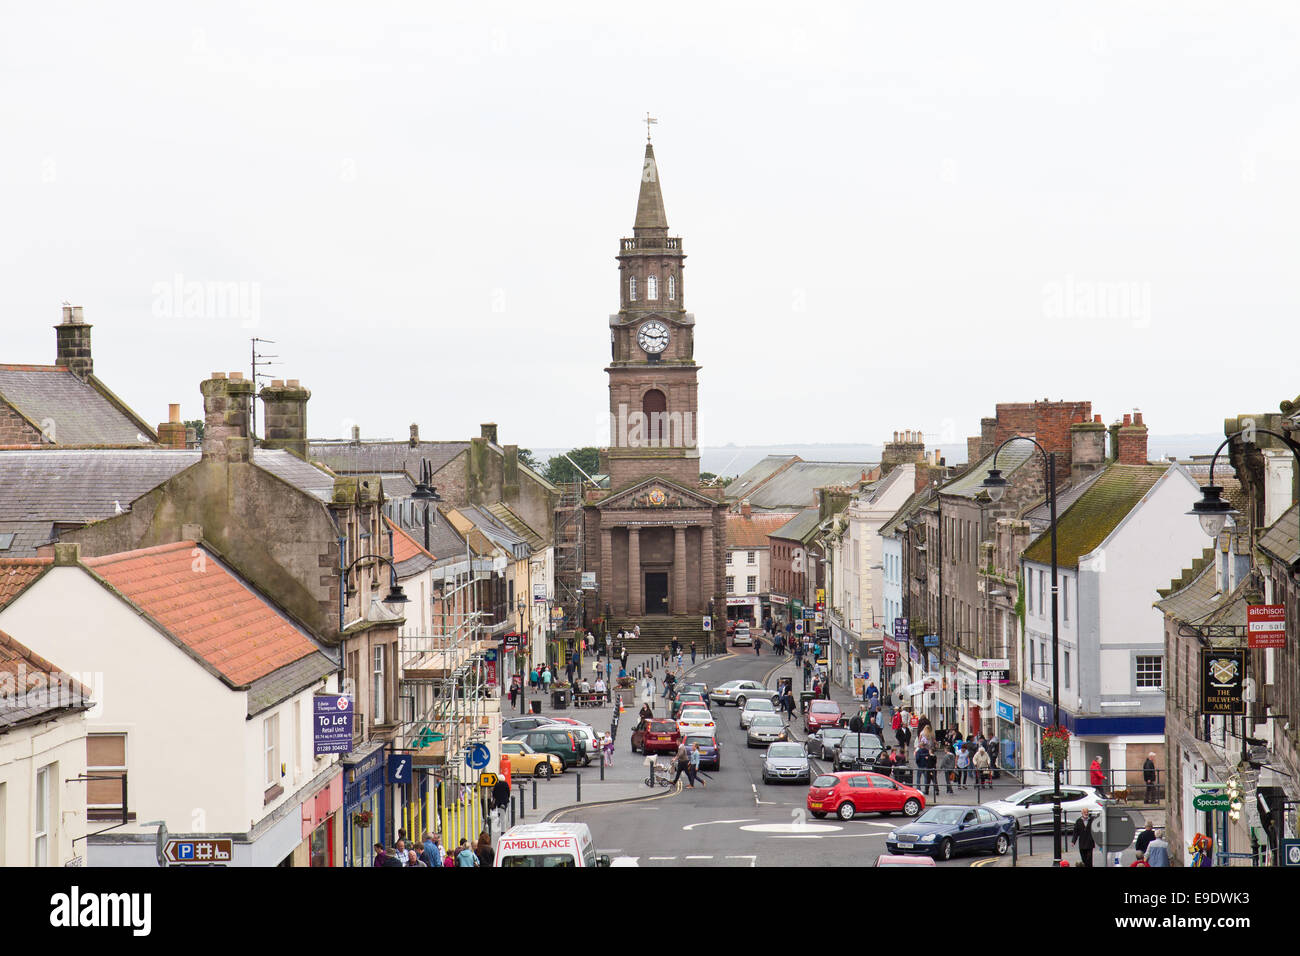 Berwick upon Tweed, Northumberland, England Stock Photo